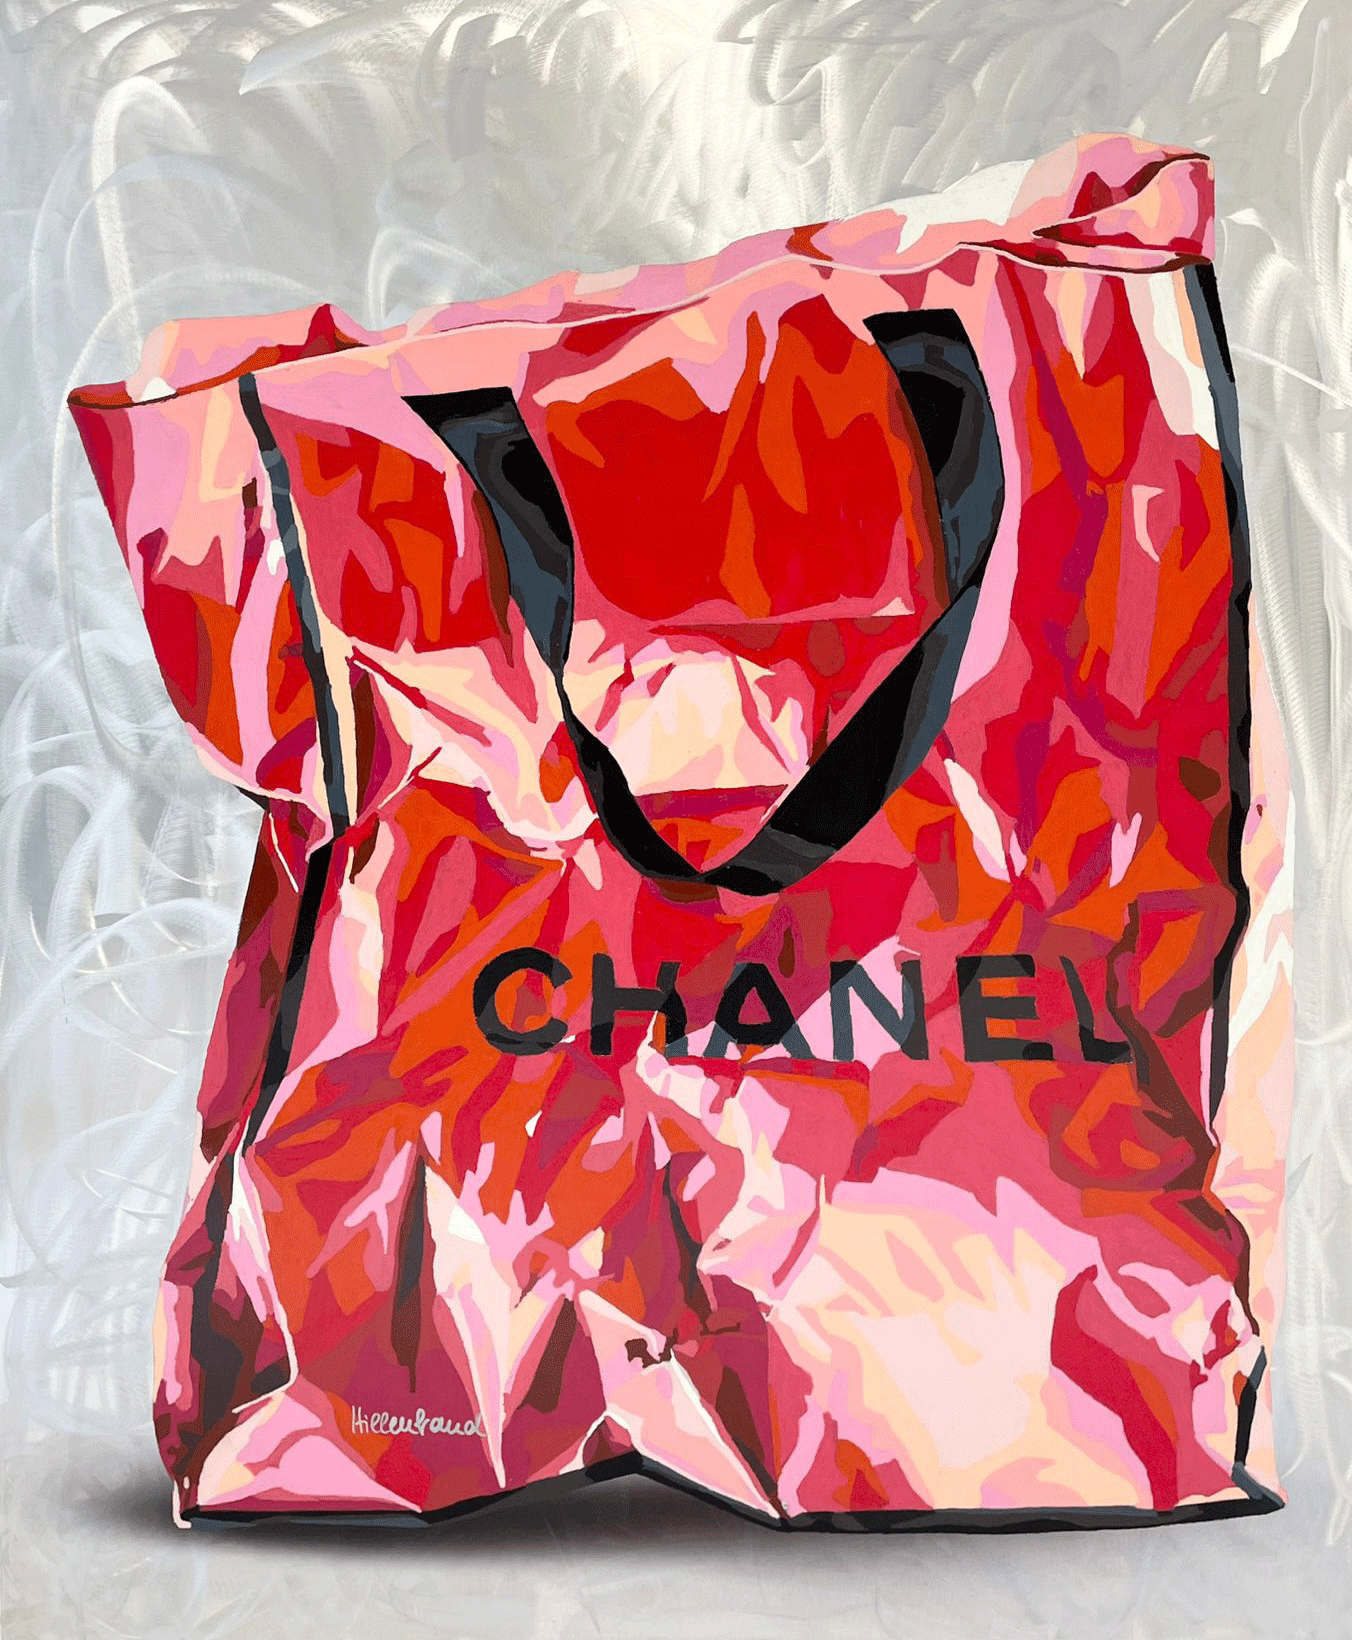 Ute Hillenbrand "Possessed Chanel"